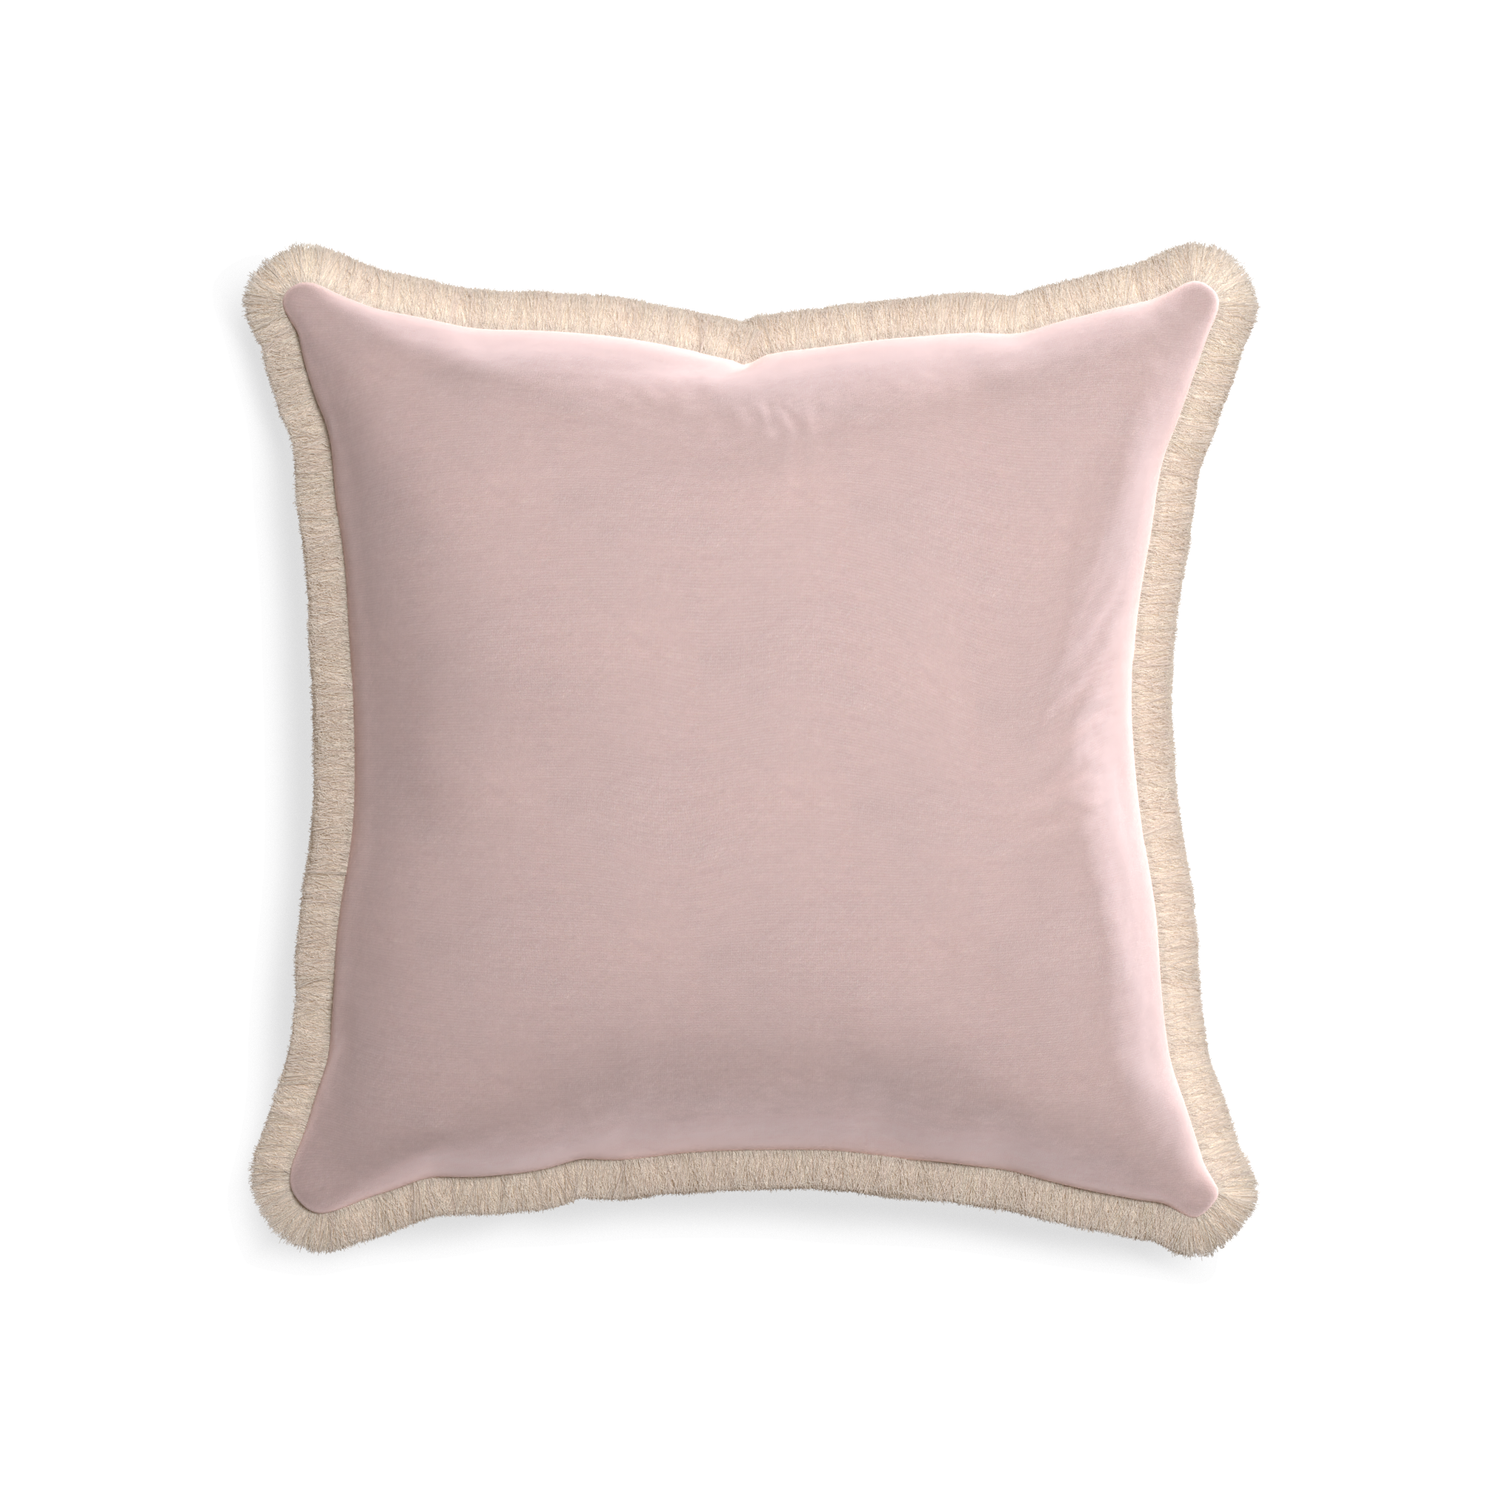 20-square rose velvet custom pillow with cream fringe on white background